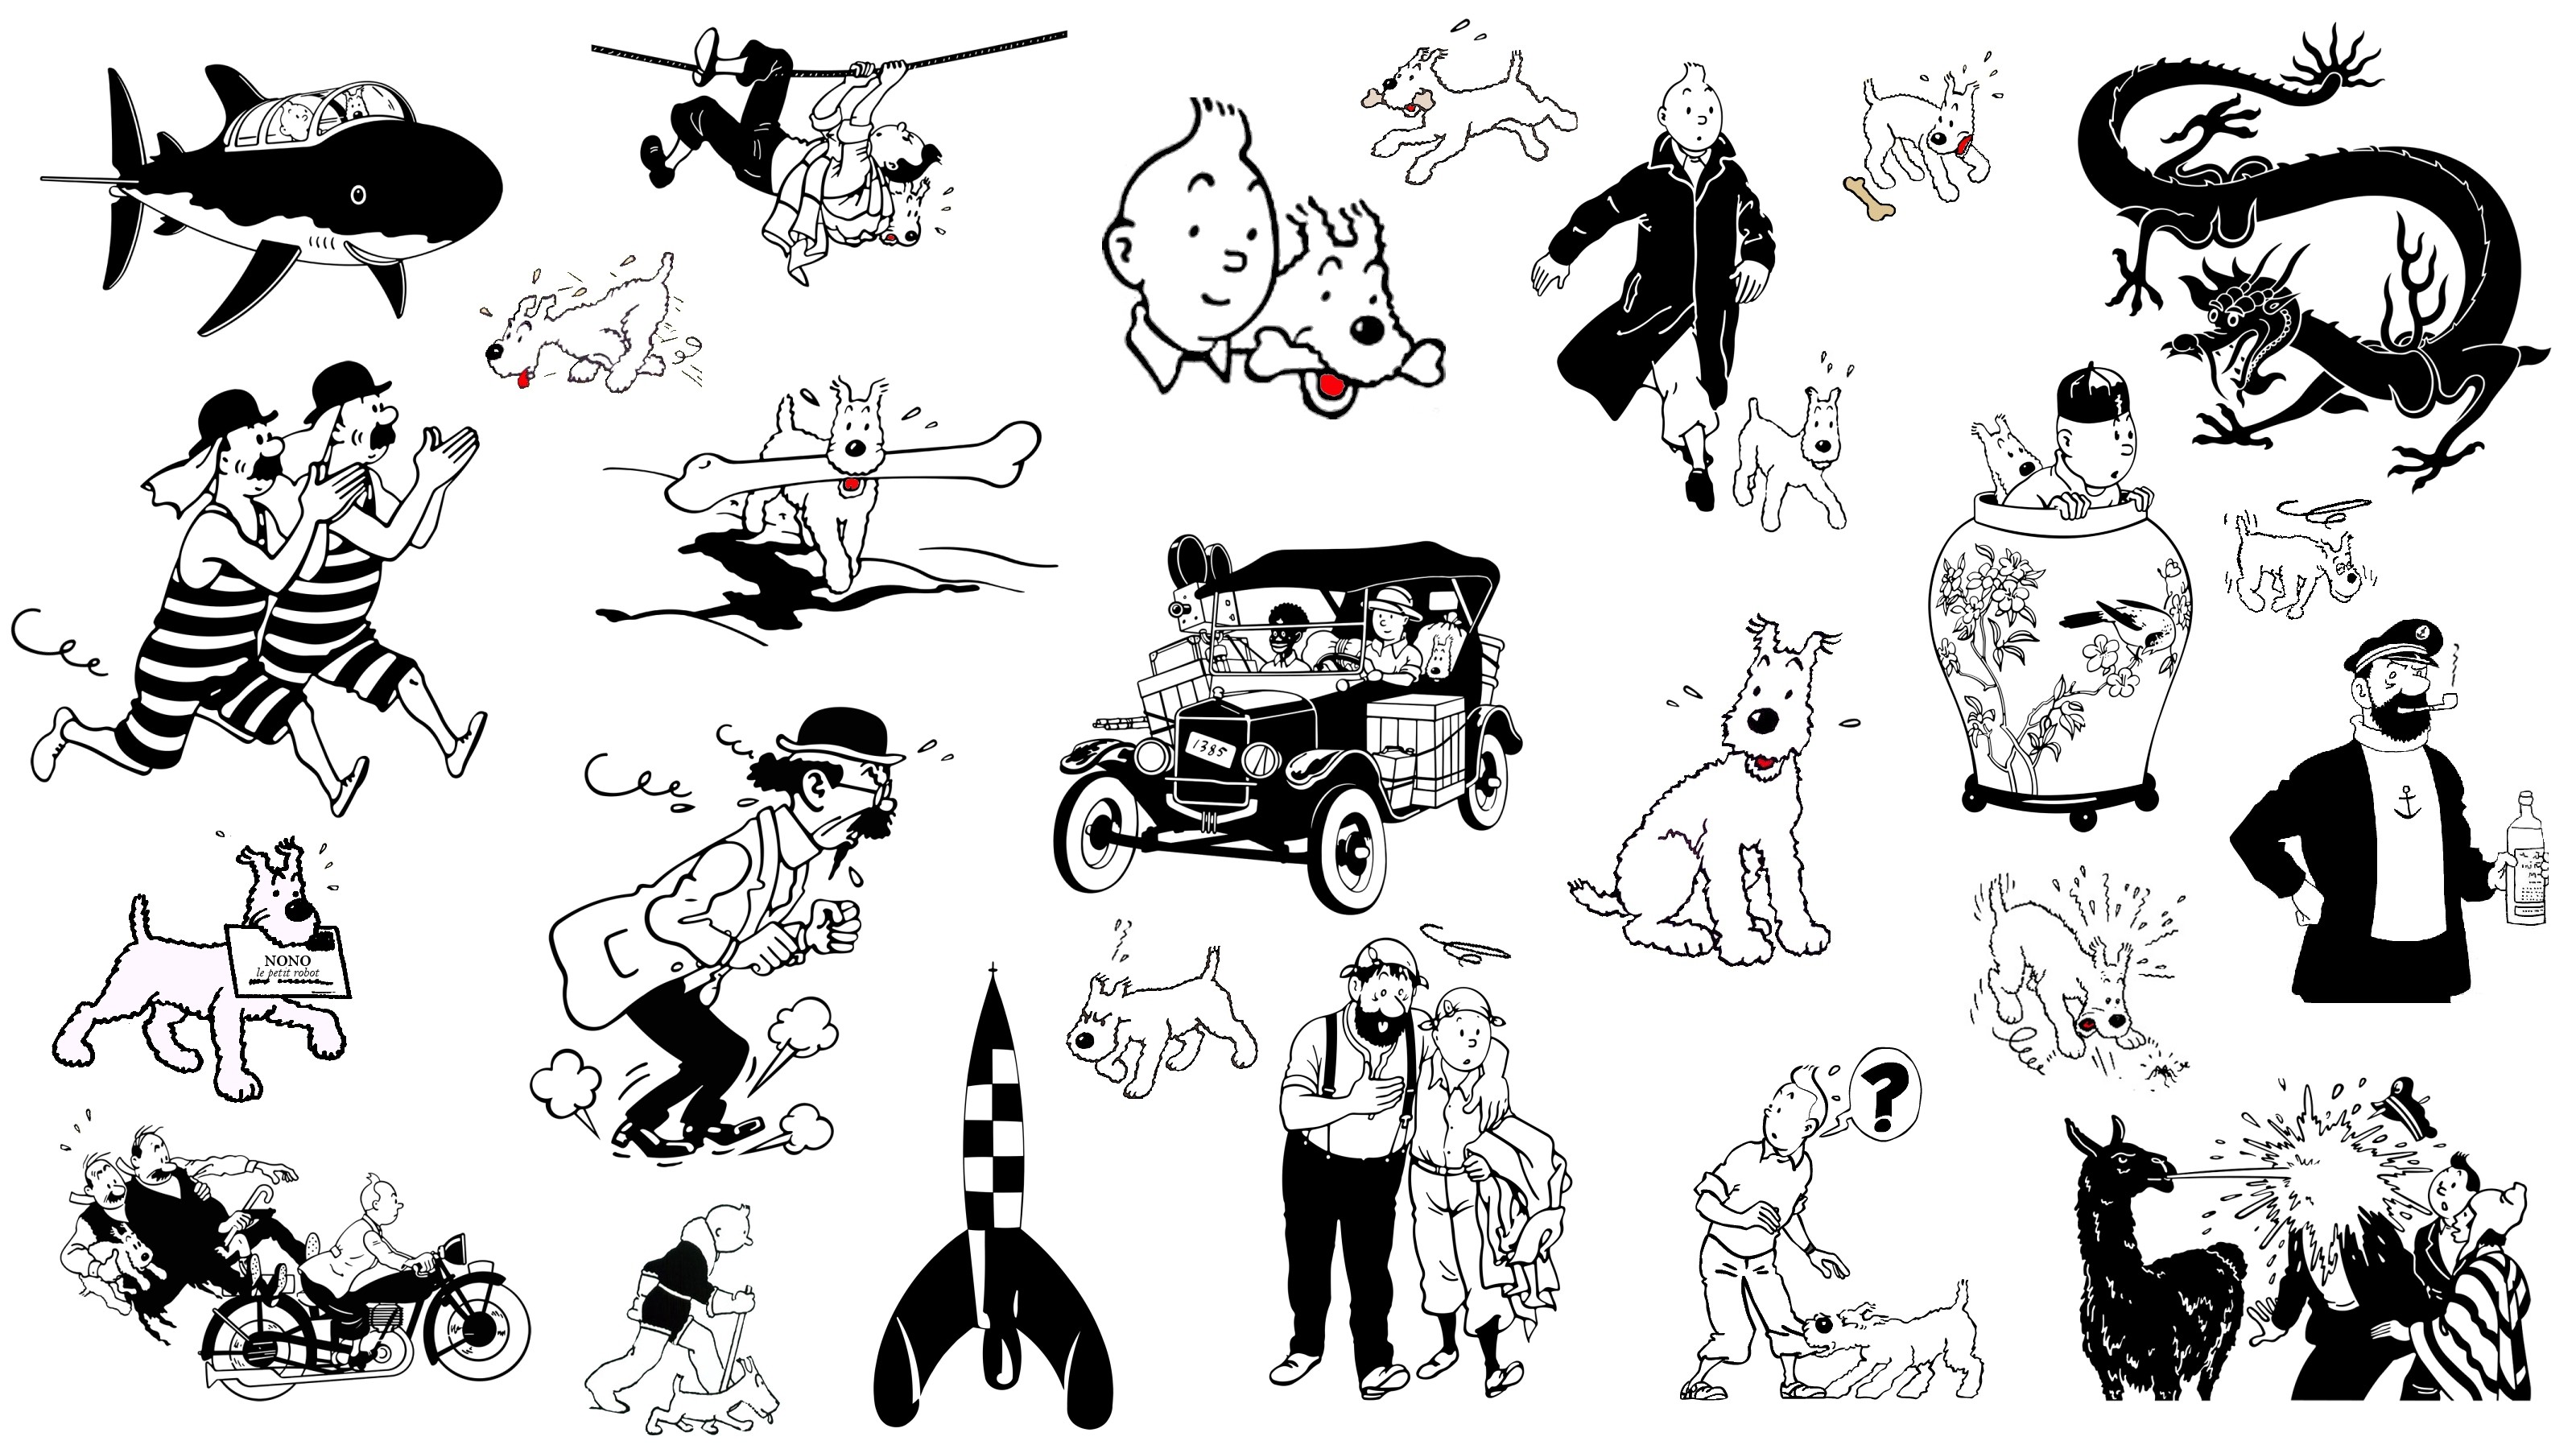 3200x1800 Tintin images Tintin HD wallpaper and background photos